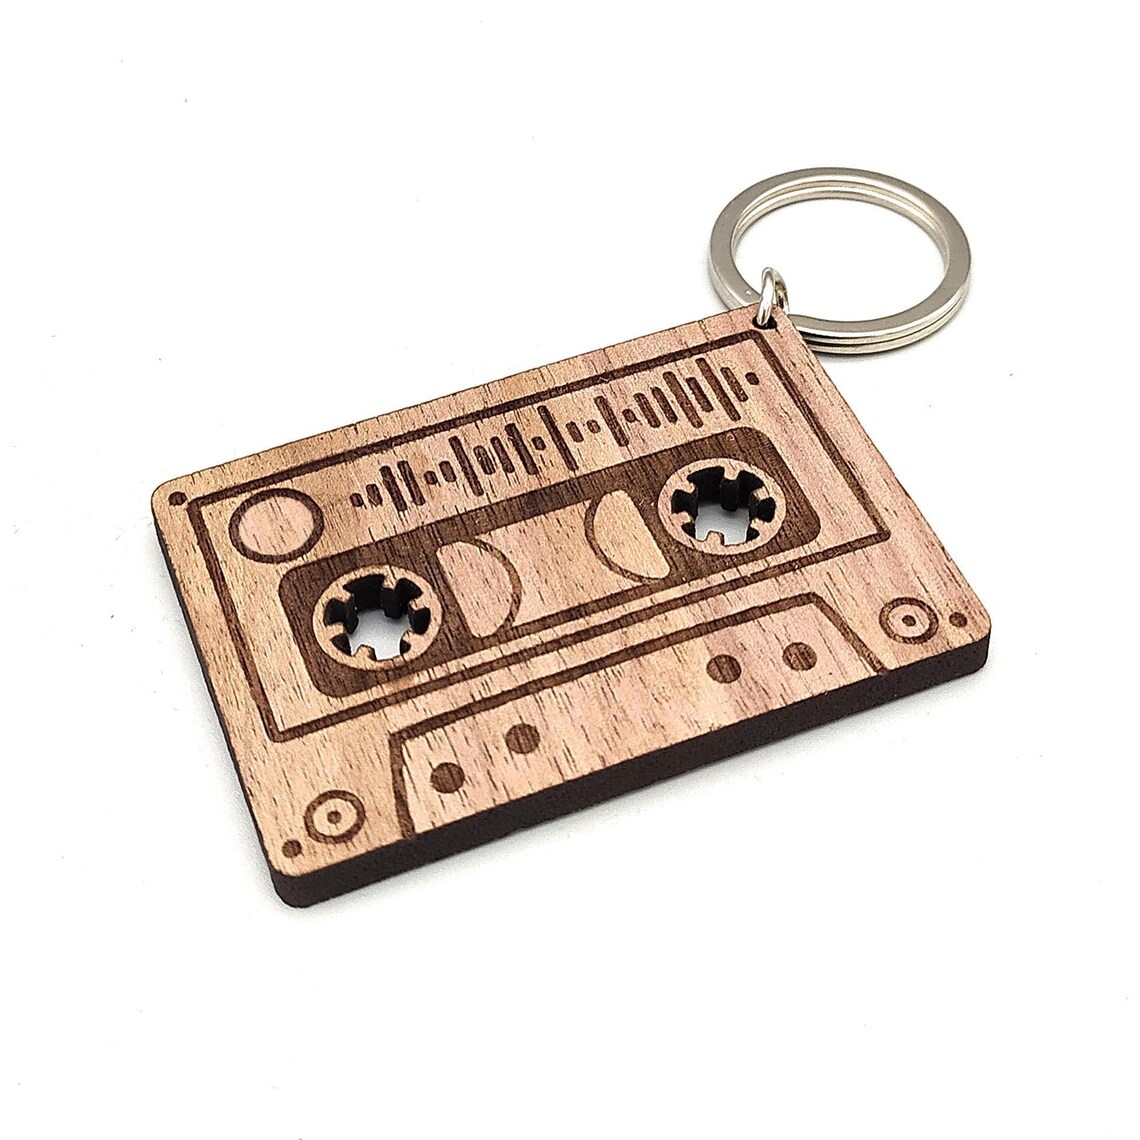 Holz Schlüsselanhänger mit Song Code - Musikkassette - personalisierter Anhänger Nussbaum